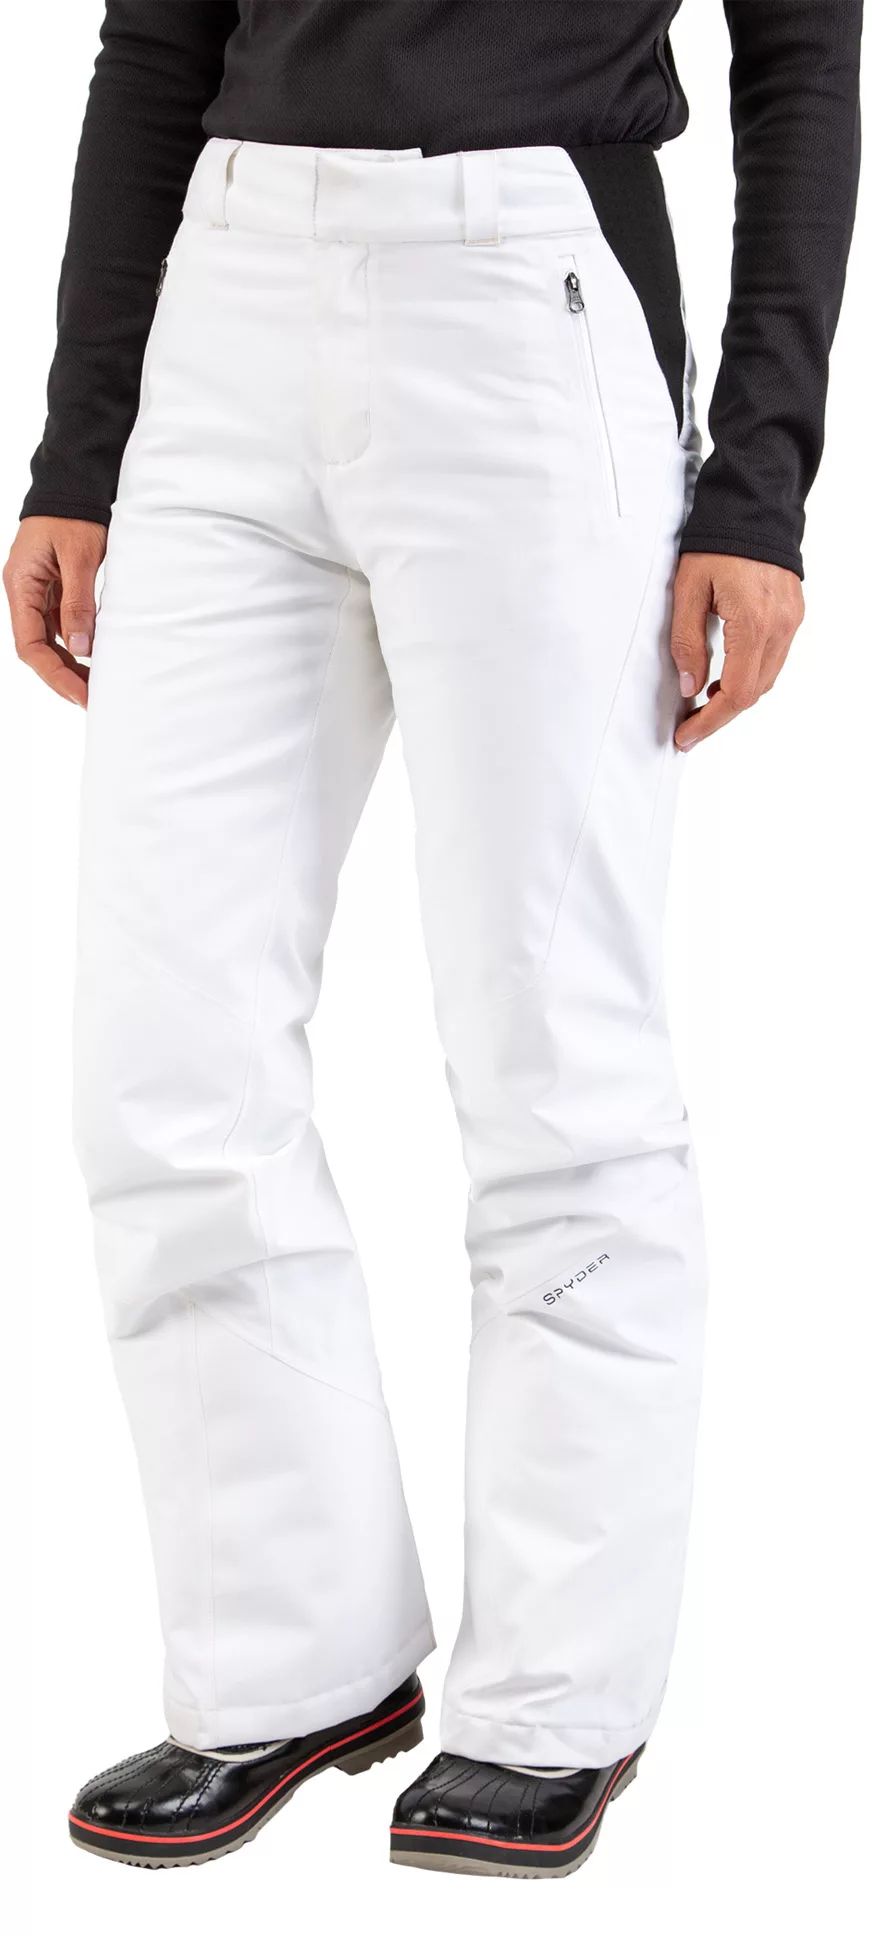 Spyder Women's Winner GTX Pants, Size 8, White | Dick's Sporting Goods